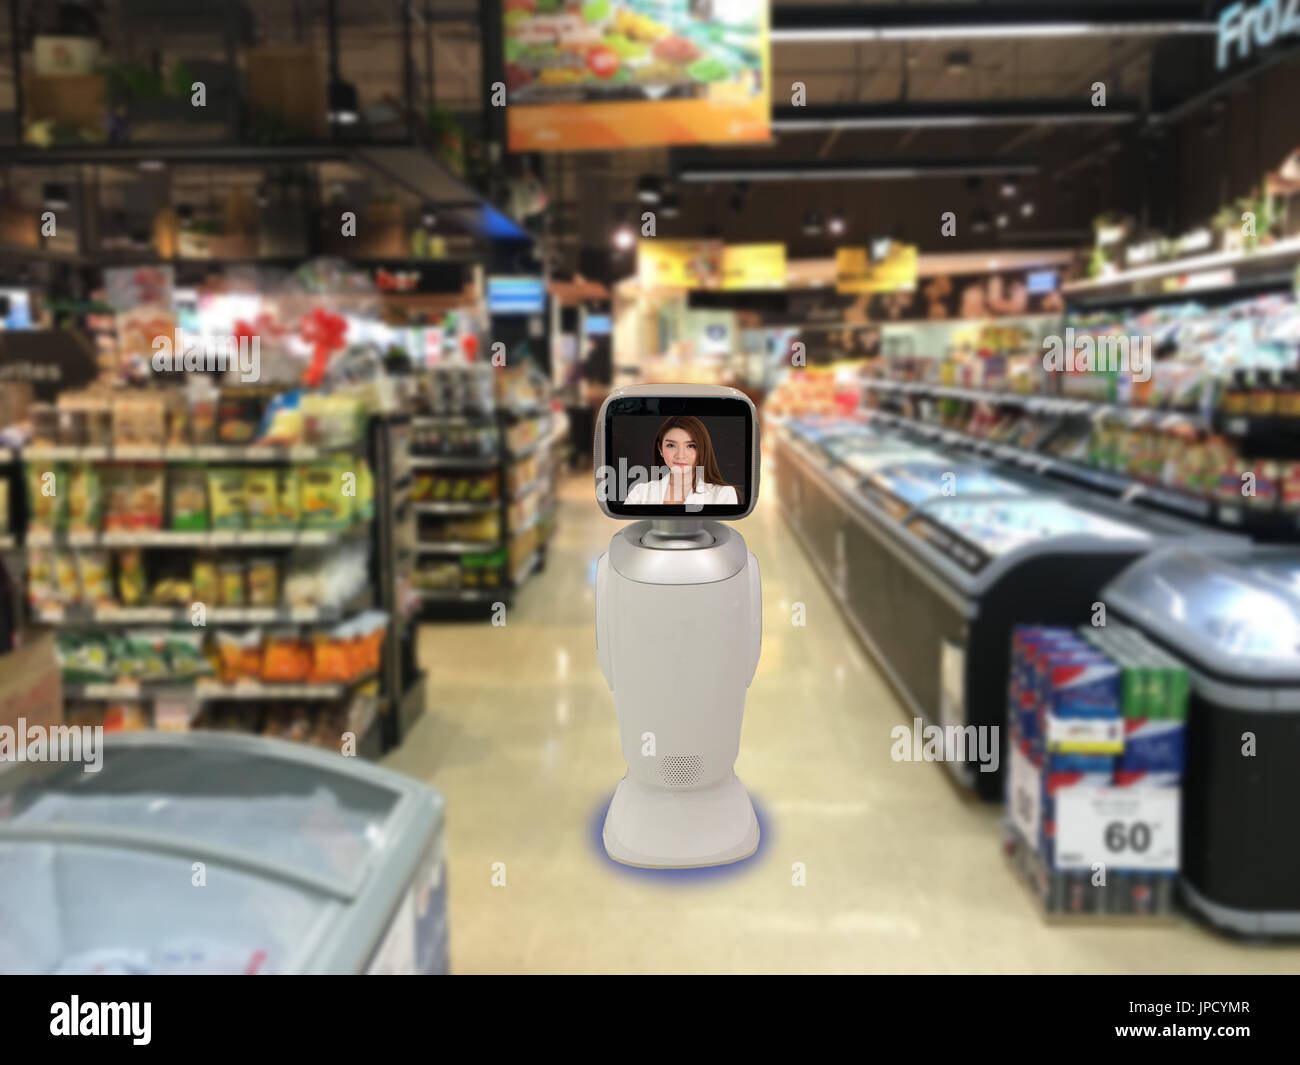 Conseiller en technologie concept robotique, la vente au détail ou magasin à utiliser pour aider le client advisor robot pendant leurs achats, afin de fournir des informations sur nos produits, se Banque D'Images